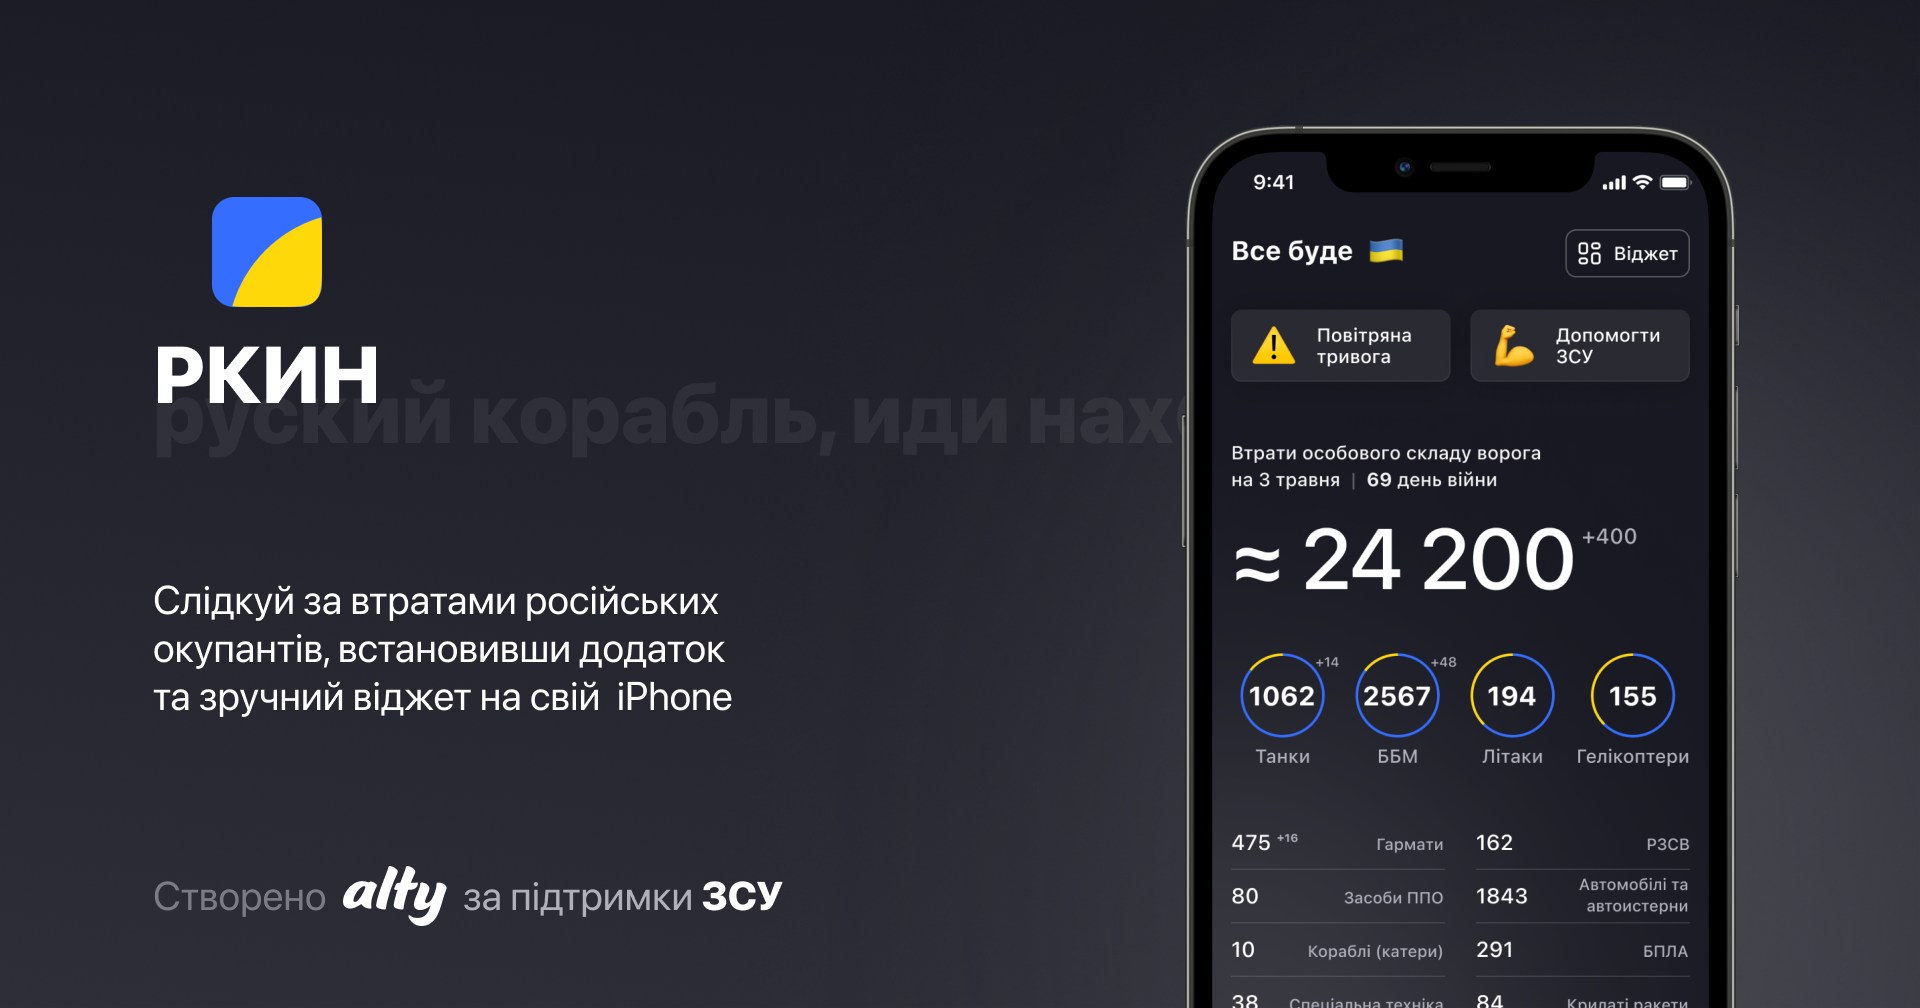 Apple menace de retirer de l'App Store l'application ukrainienne PKIN contenant des données sur les pertes des occupants russes